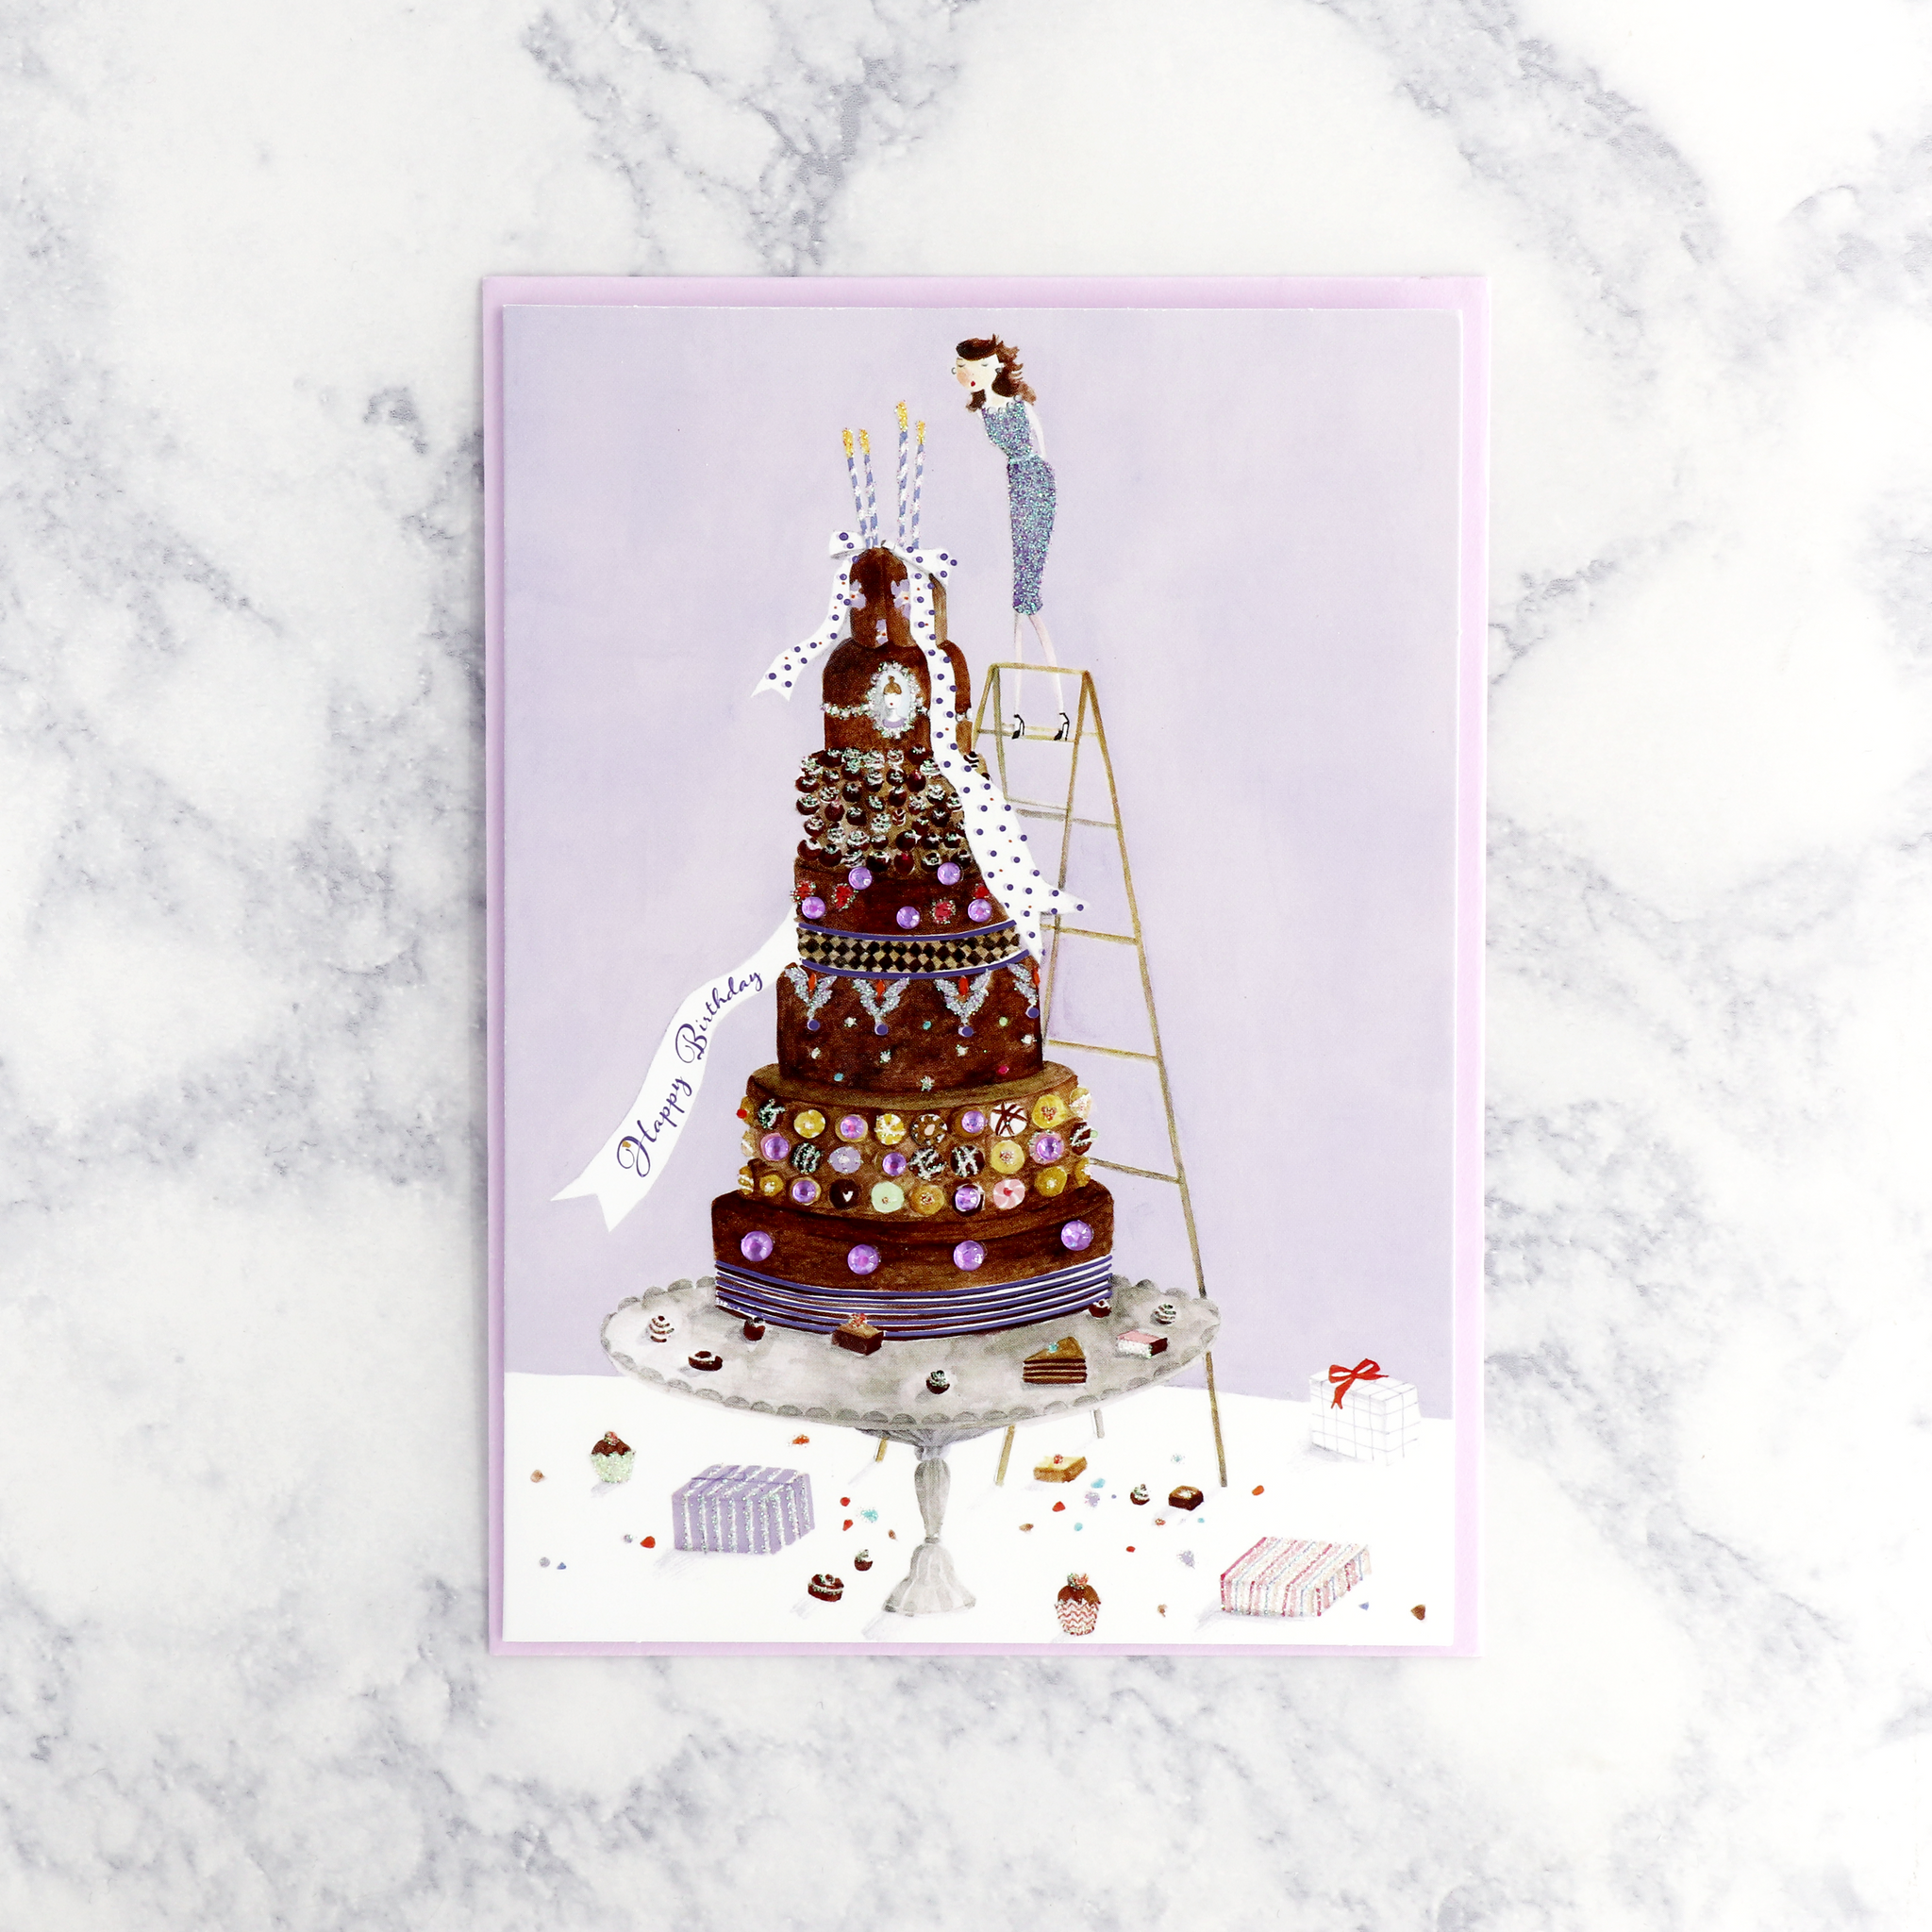 Fashion Gal On Cake Birthday Card